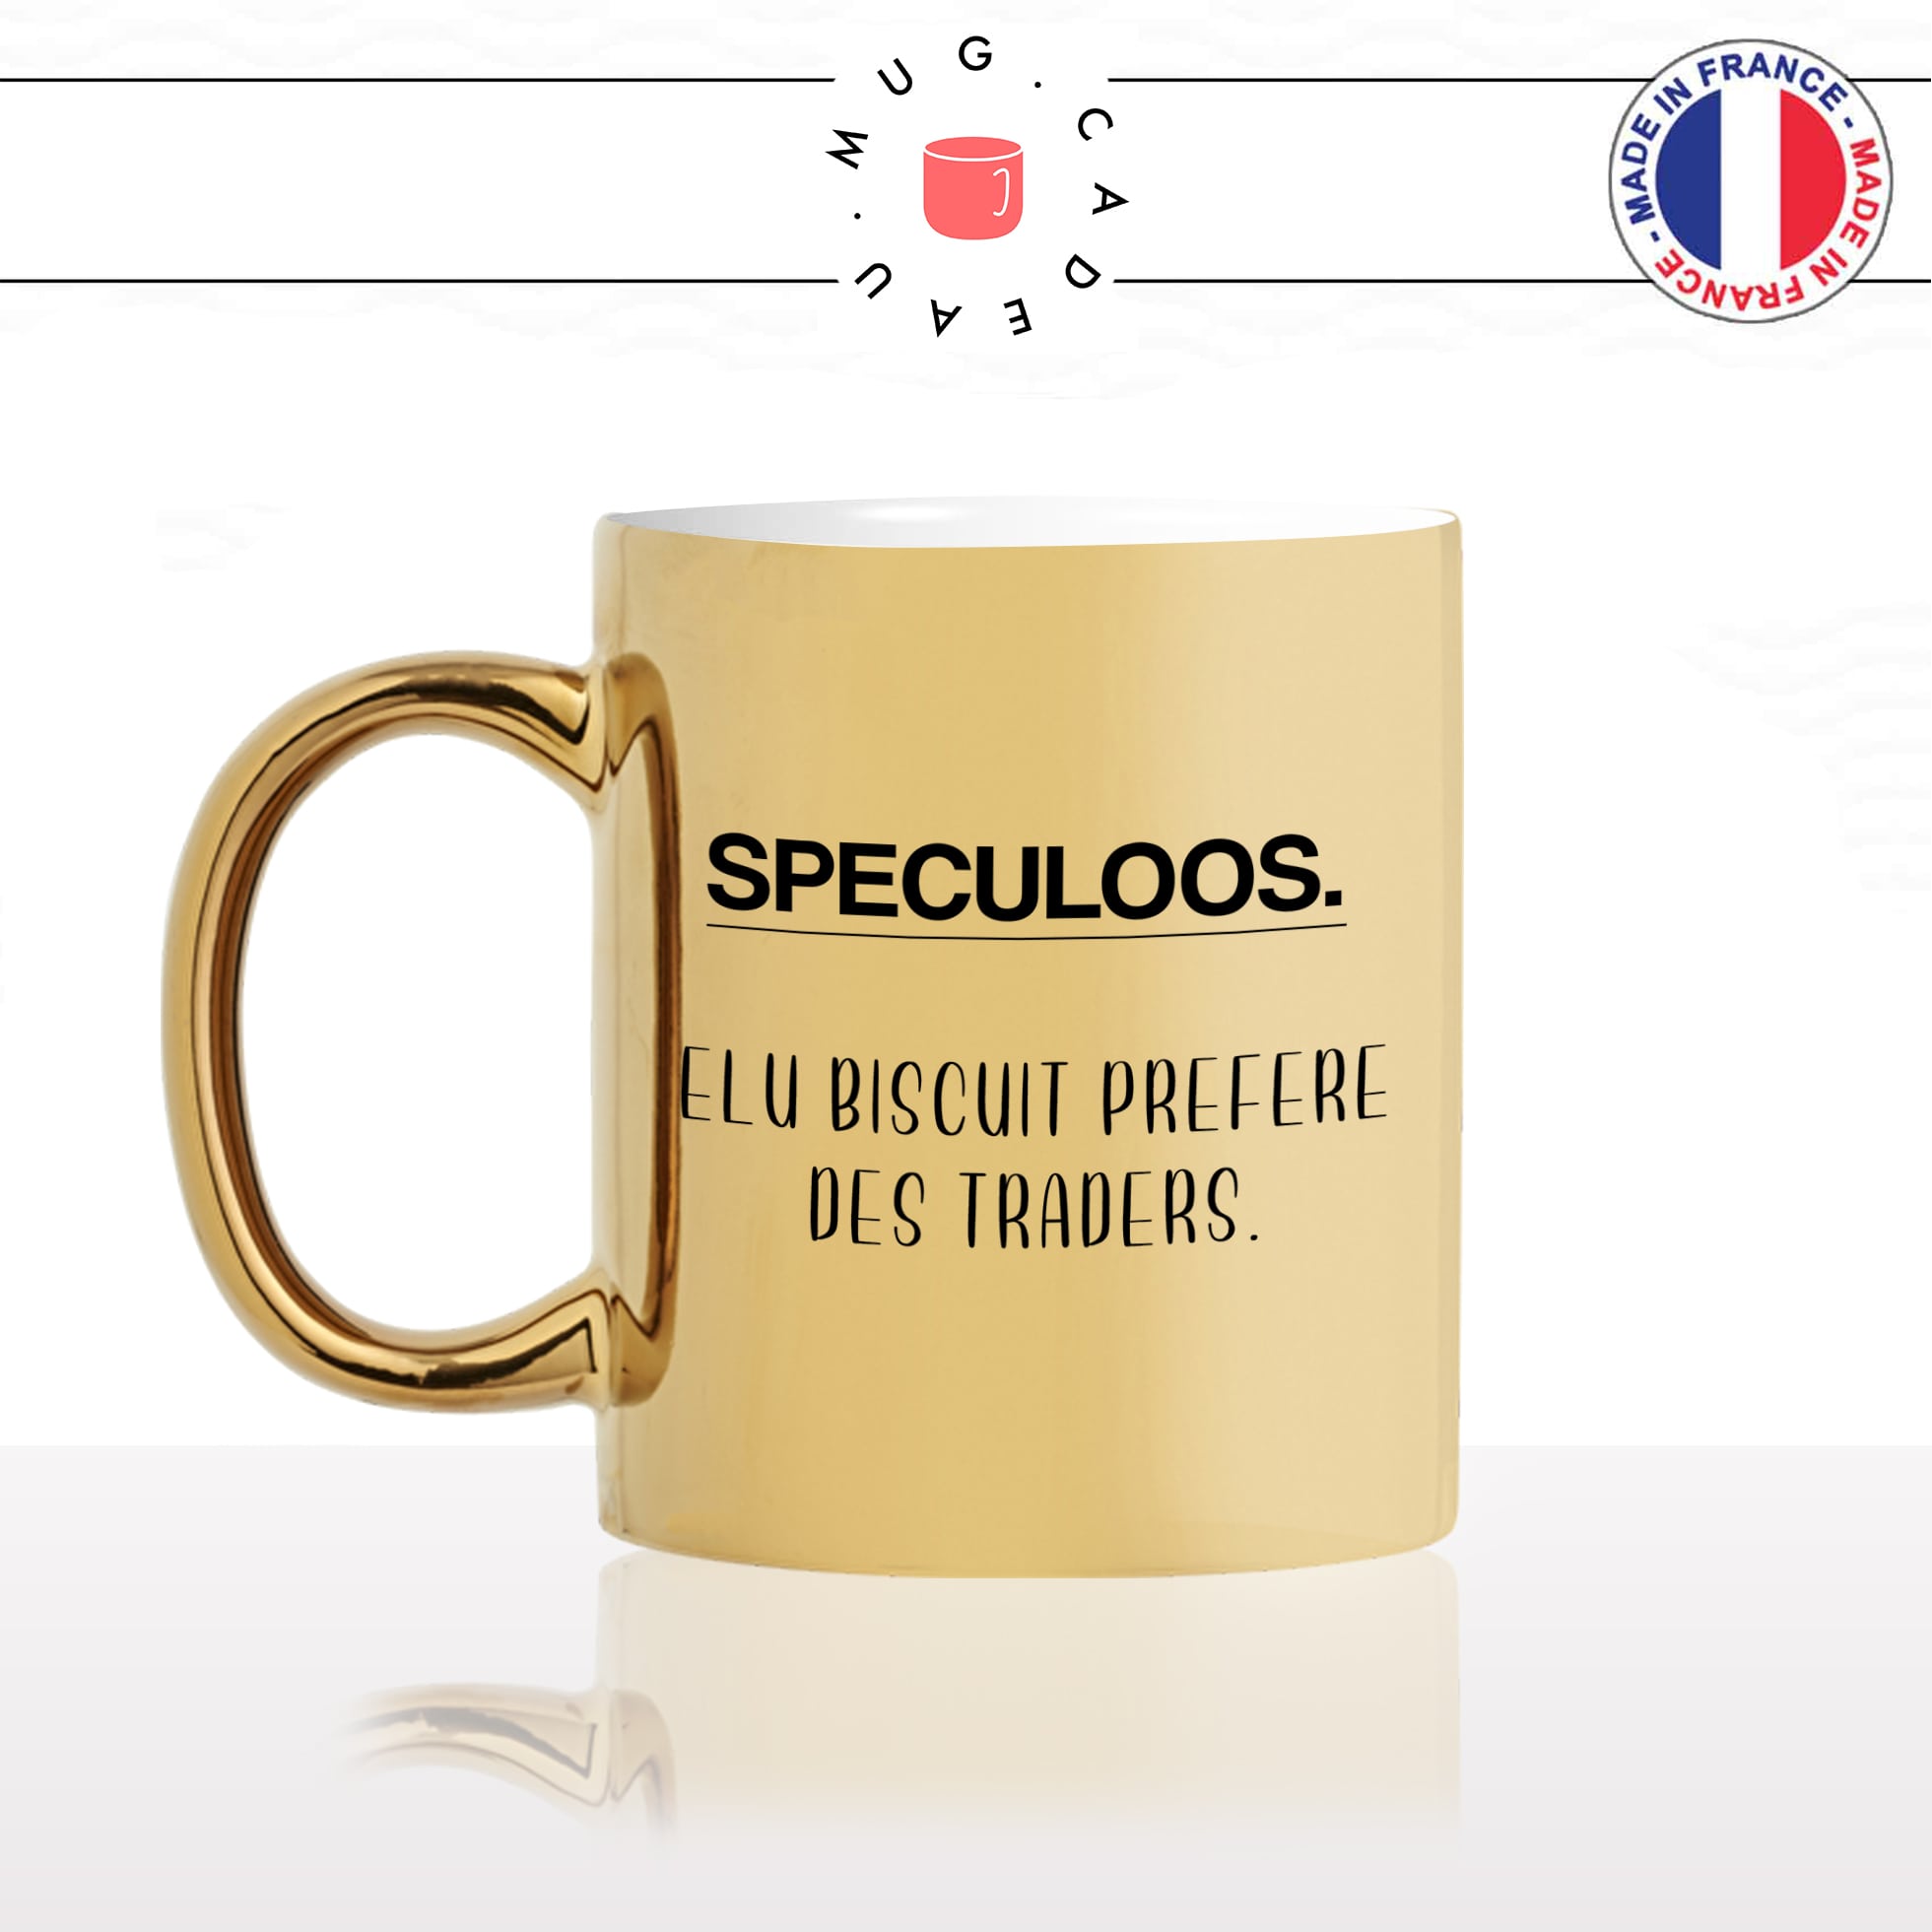 mug-tasse-doré-or-gold-définition-spéculoos-biscuit-trader-métier-blague-humour-fun-idée-cadeau-personnalisé-café-thé-min